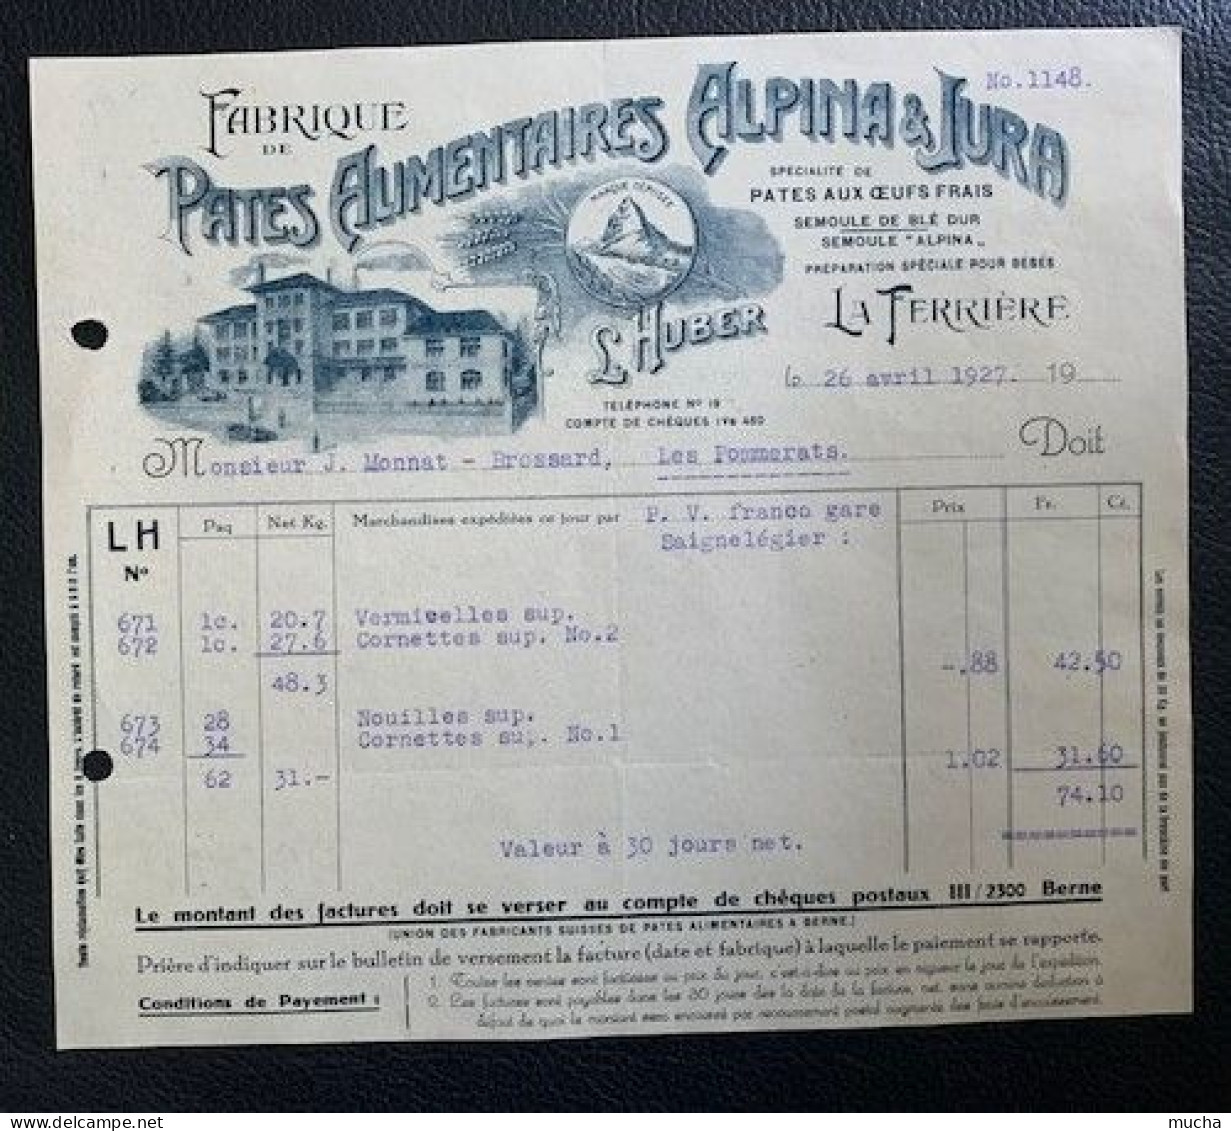 70148 - Facture Illustrée Pates Alimentaires Alpina & Jura La Ferrière 26.04.1922 - Suiza